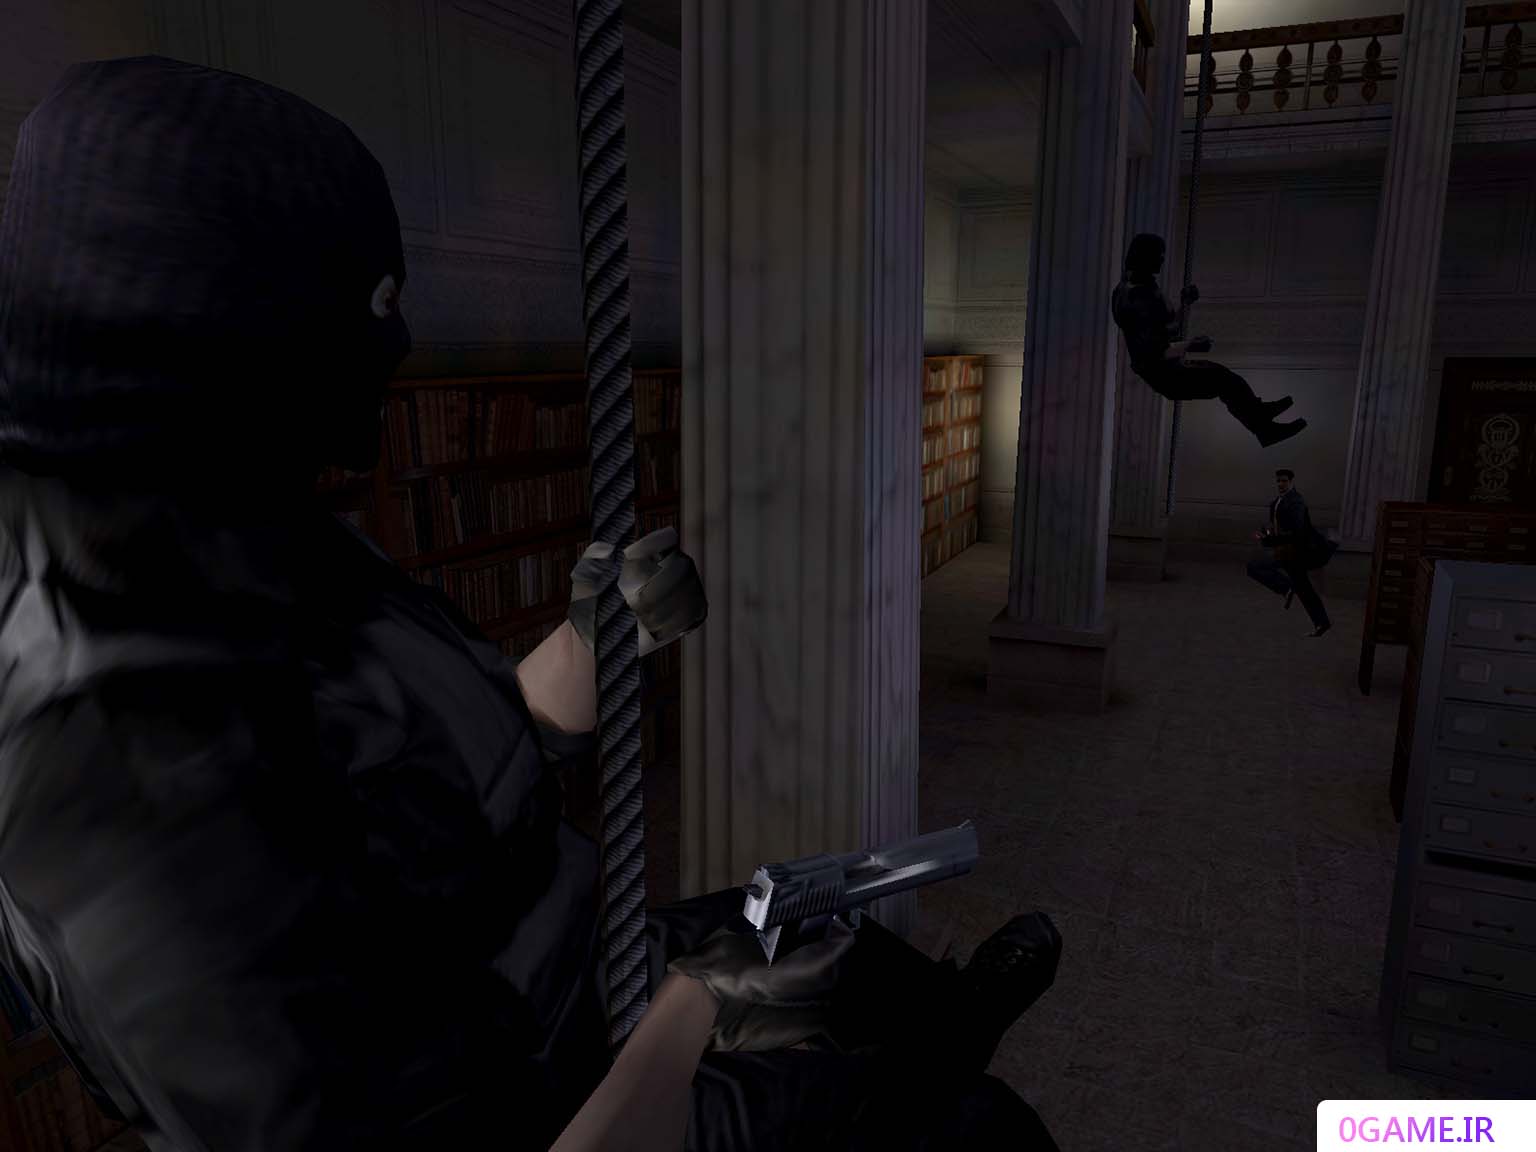 دانلود بازی مکس پین 1 (Max Payne) نسخه کامل برای کامپیوتر